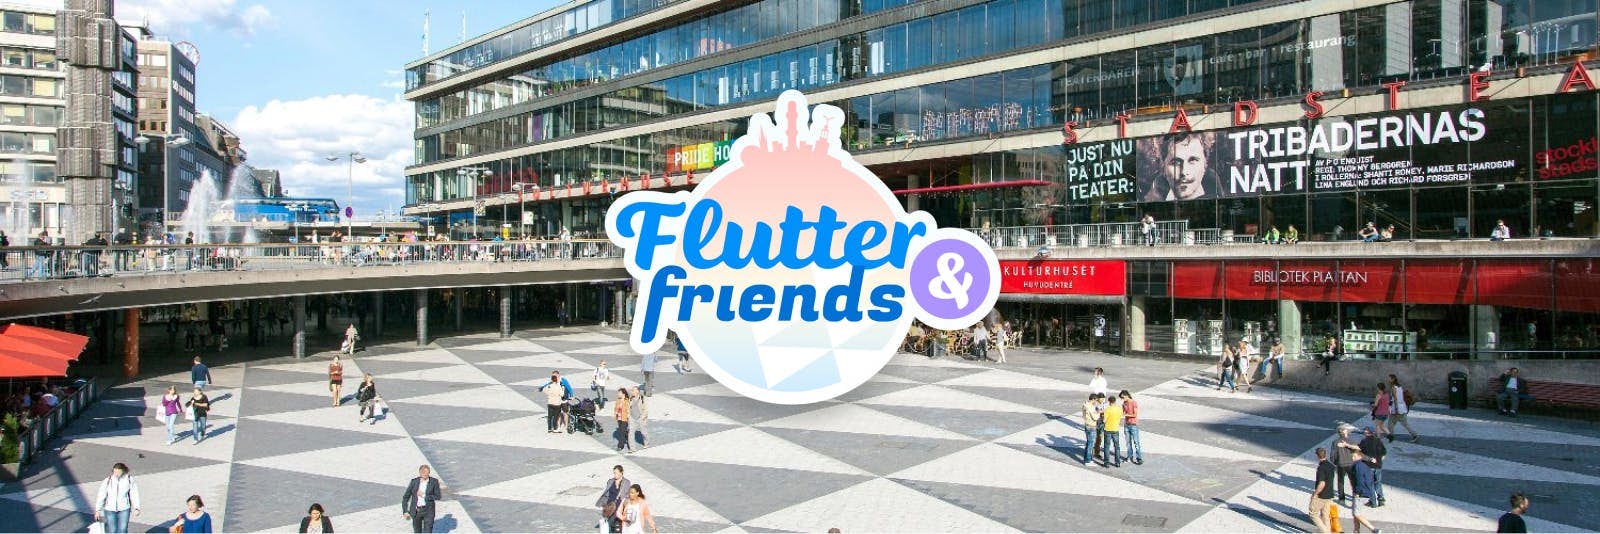 Flutter & Friends - Conference in Stockholm, Sweden